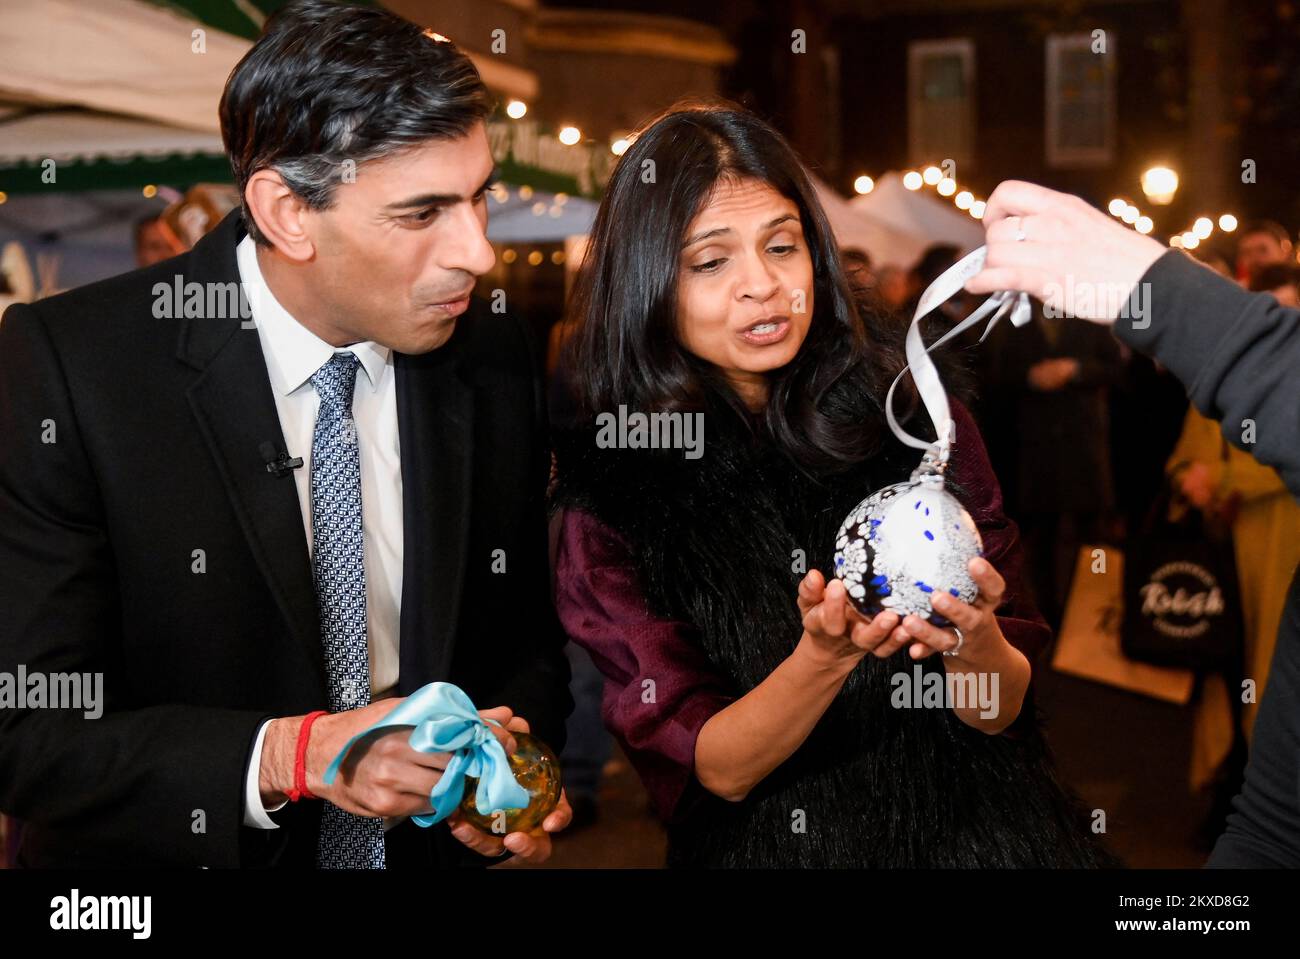 El Primer Ministro Rishi Sunak y su esposa Akshata Murty reciben bolas de vidrio sopladas a mano mientras visitan un mercado de alimentos y bebidas mientras Sunak celebra un escaparate festivo en Downing Street, Londres, en forma de mercado callejero para promocionar empresas de todo el Reino Unido antes del sábado de la pequeña empresa. Fecha de la foto: Miércoles 30 de noviembre de 2022. Foto de stock